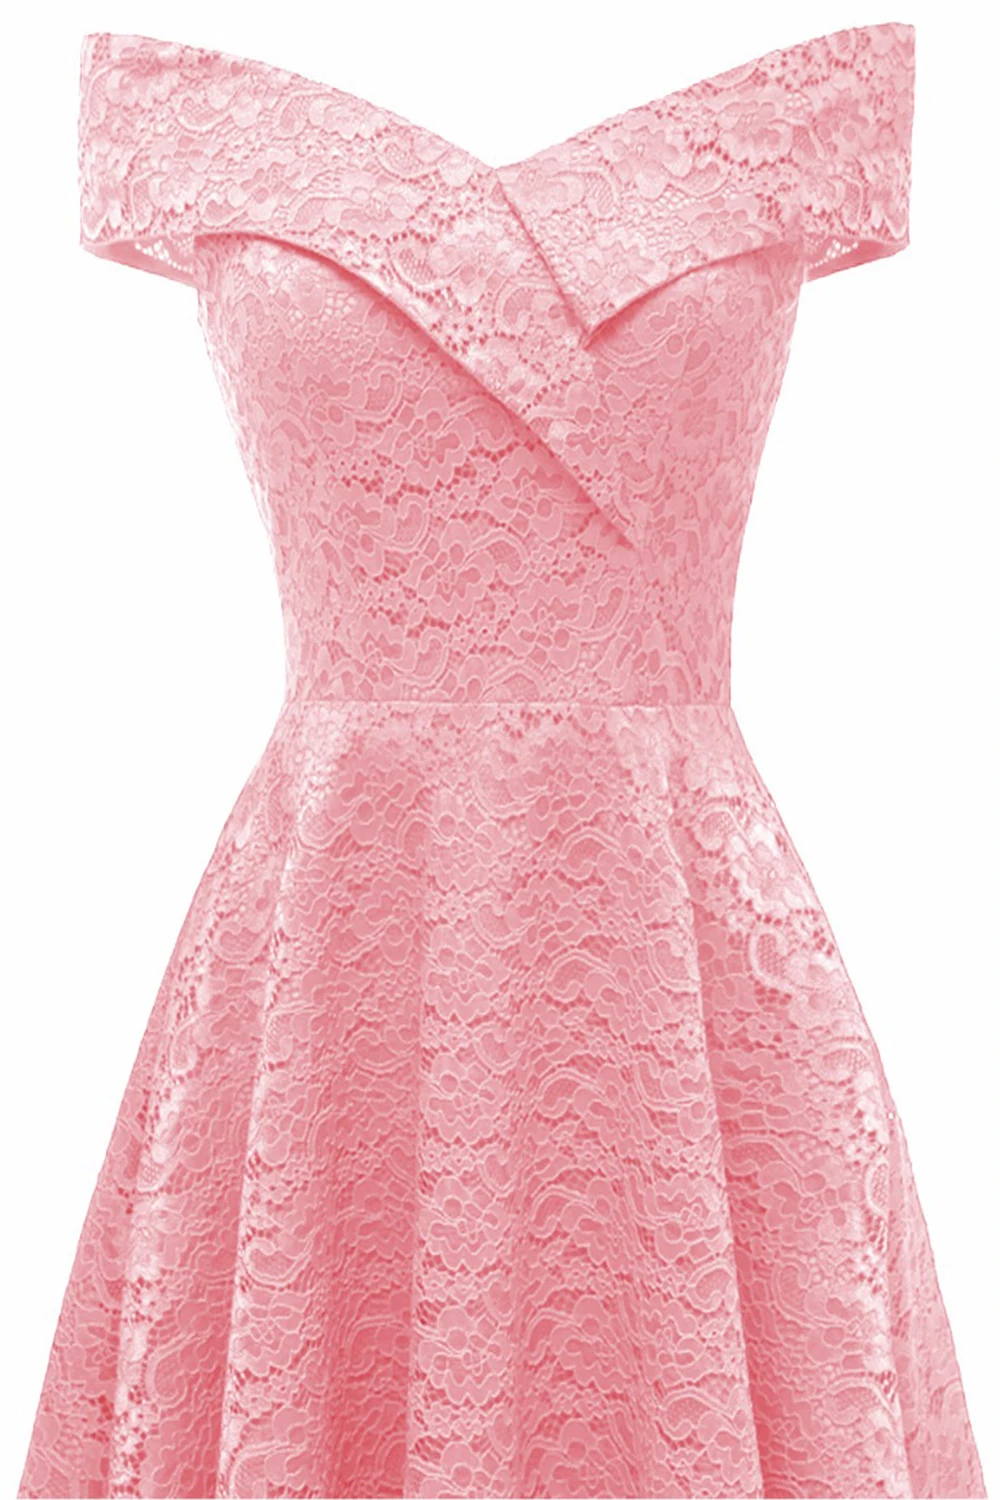 Стиль; милые короткие вечерние платья размера плюс с кружевами; цвет розовый цвет красного вина вечерние торжественное платье Встреча выпускников/корпоративы Выпускной платья Robe De Soiree